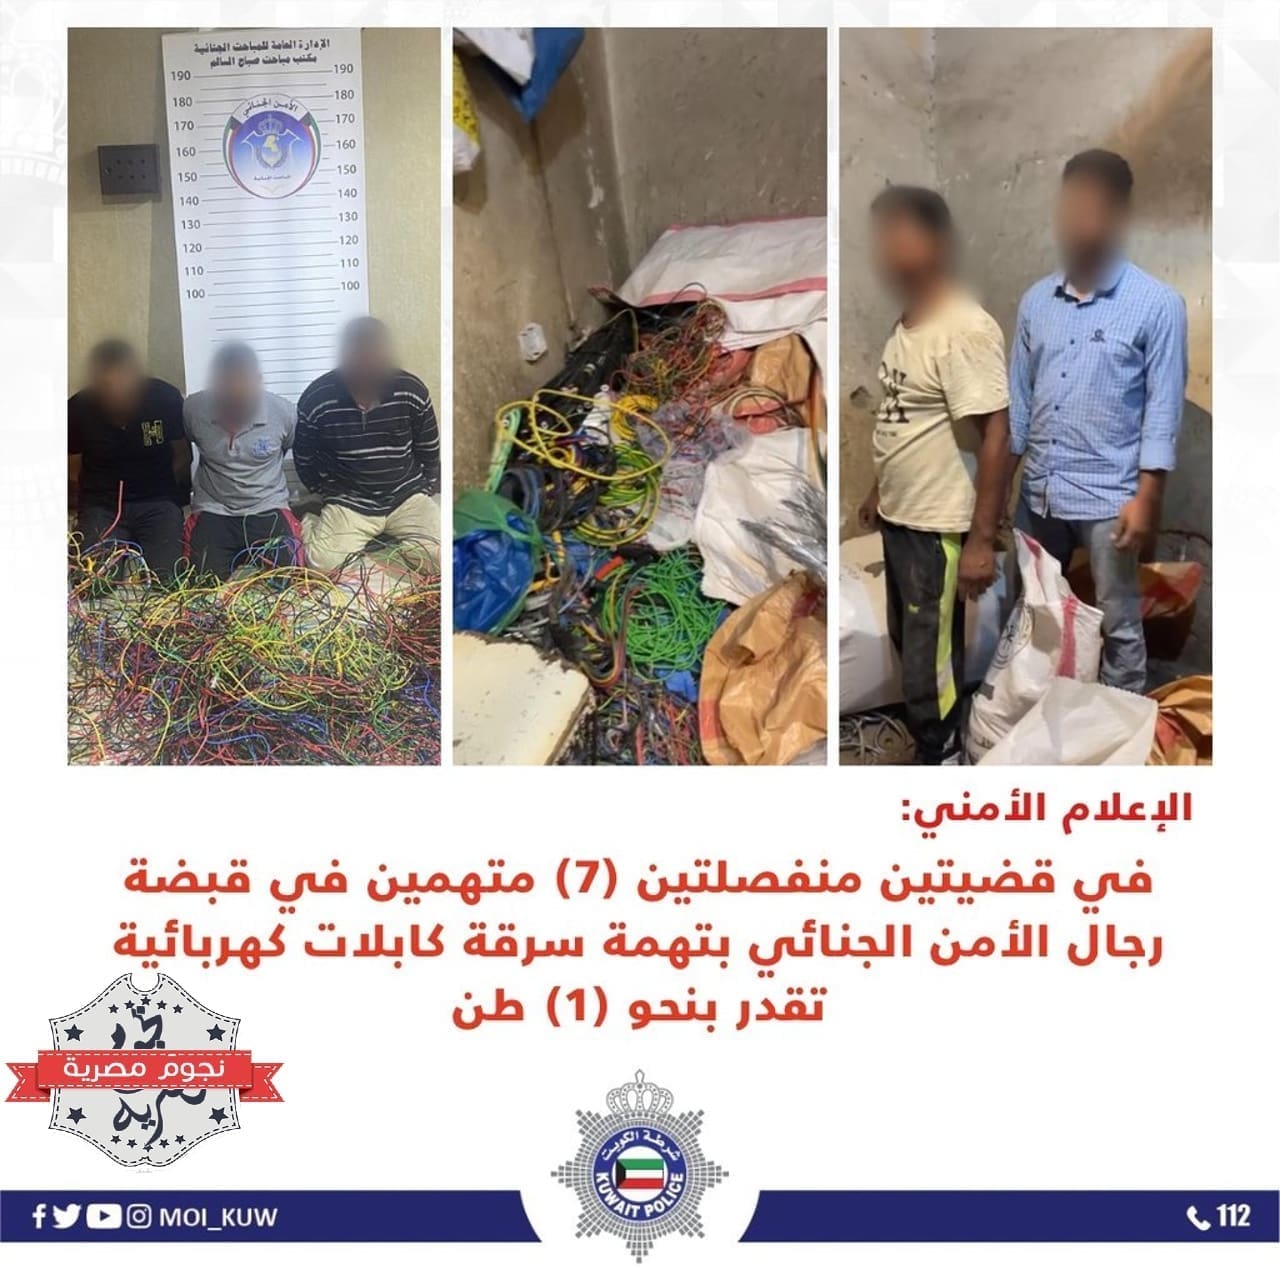 ضبطية أمنية ناجحة لوزارة الداخلية الكويتية لجريمة سرقة كابلات الكهرباء (مصدر الصورة. الحساب الرسمي للوزارة على تويتر)